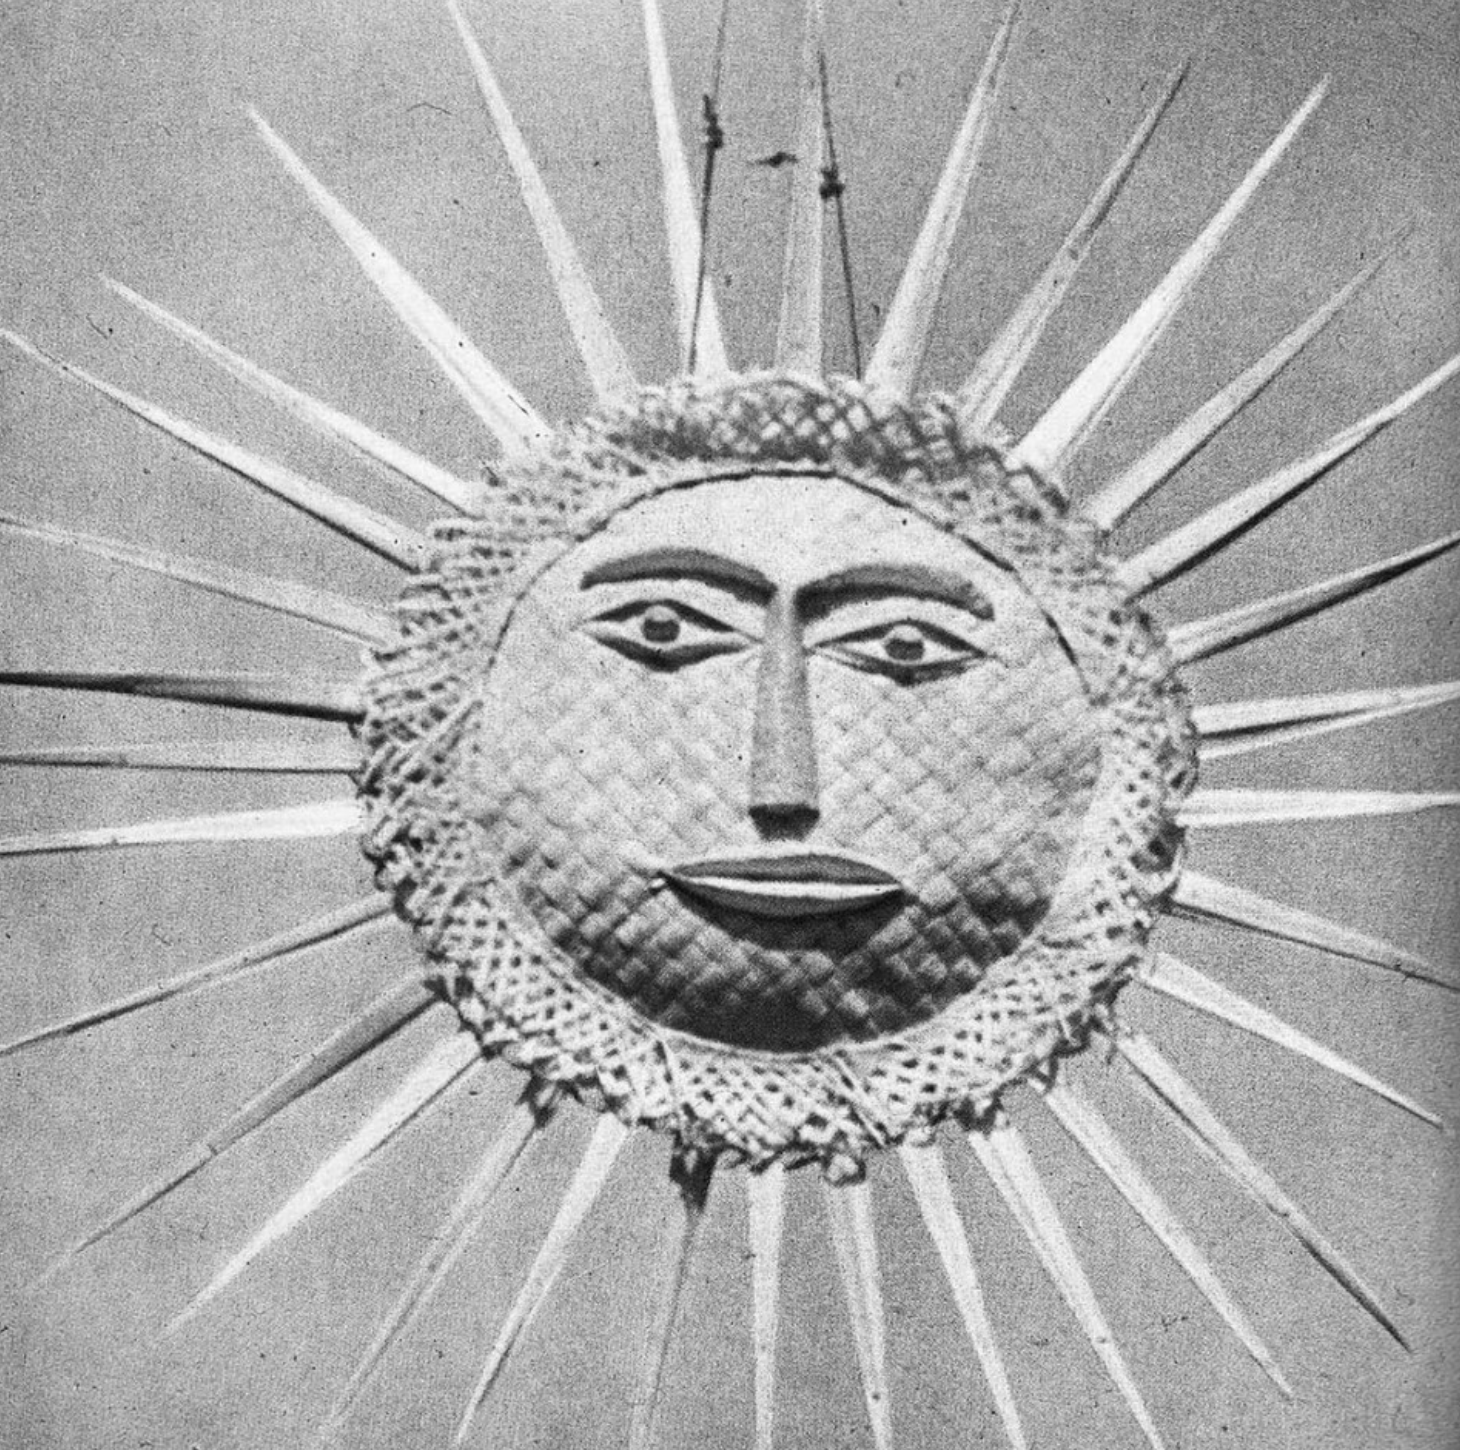 Sunscreen: An Origin Story